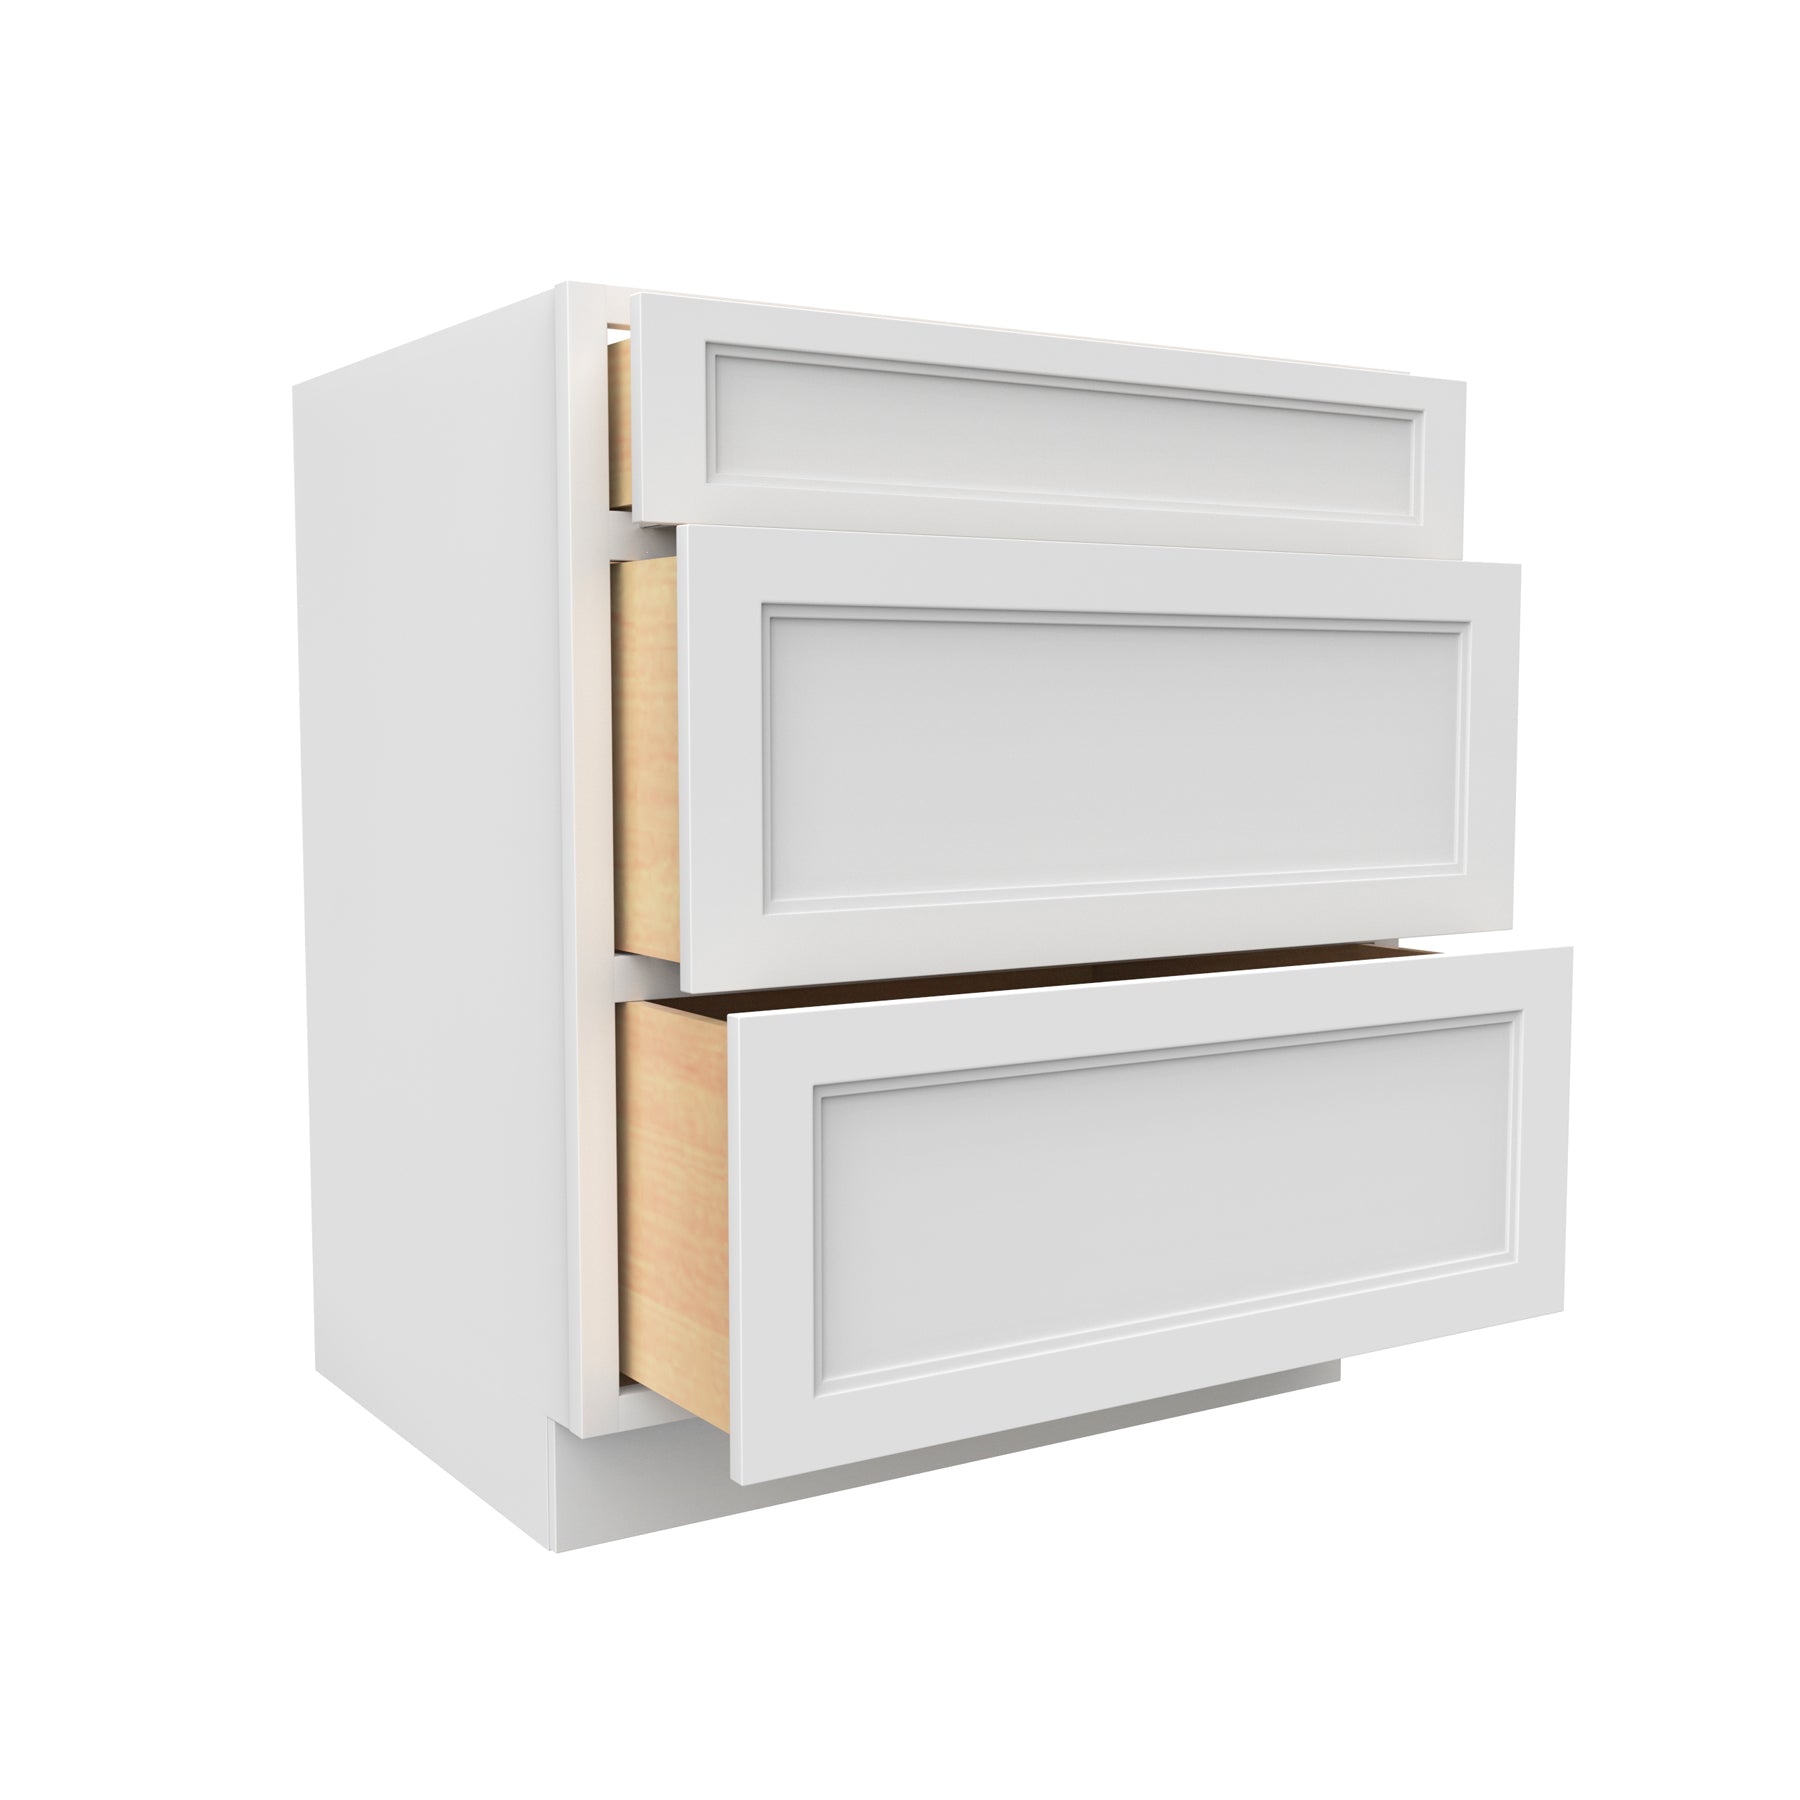 Fashion White - 3 Drawer Base Cabinet | 30"W x 34.5"H x 24"D